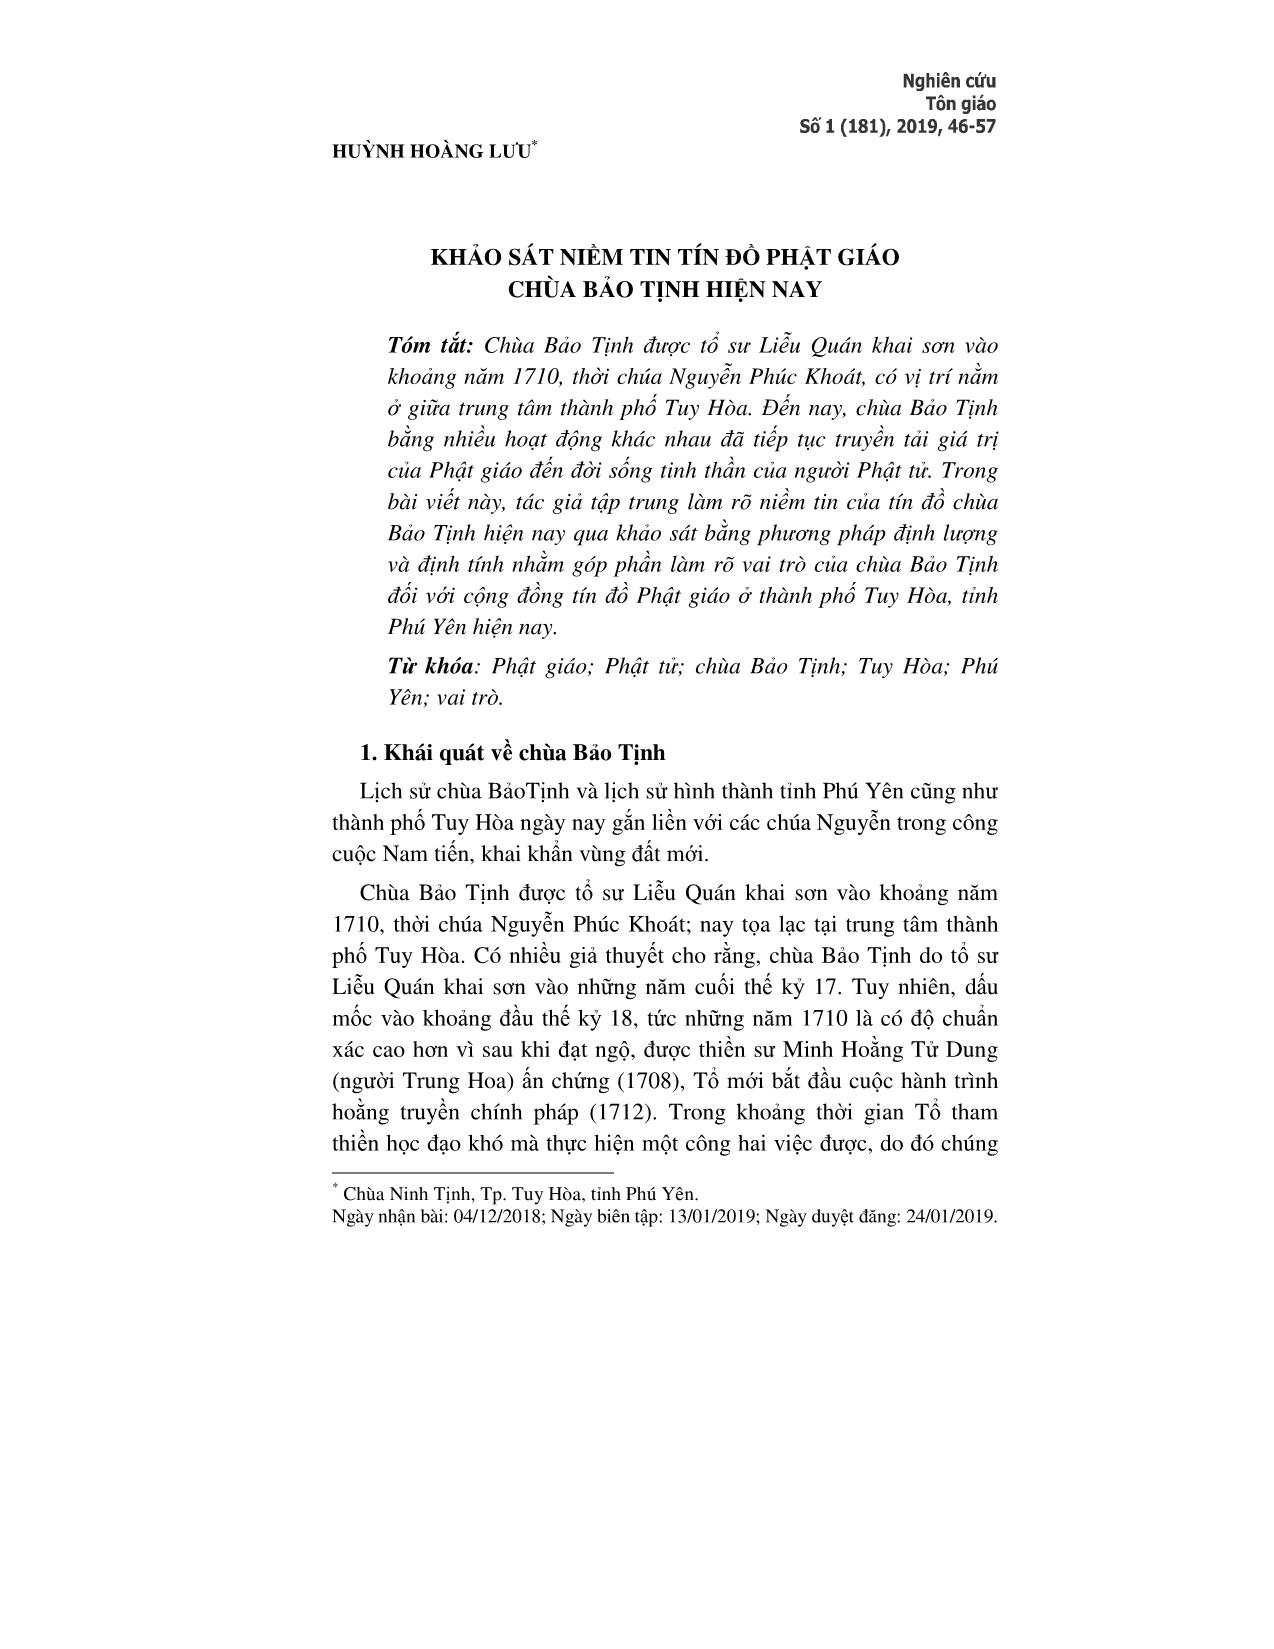 Khảo sát niềm tin tín đồ Phật giáo chùa Bảo Tịnh hiện nay trang 1